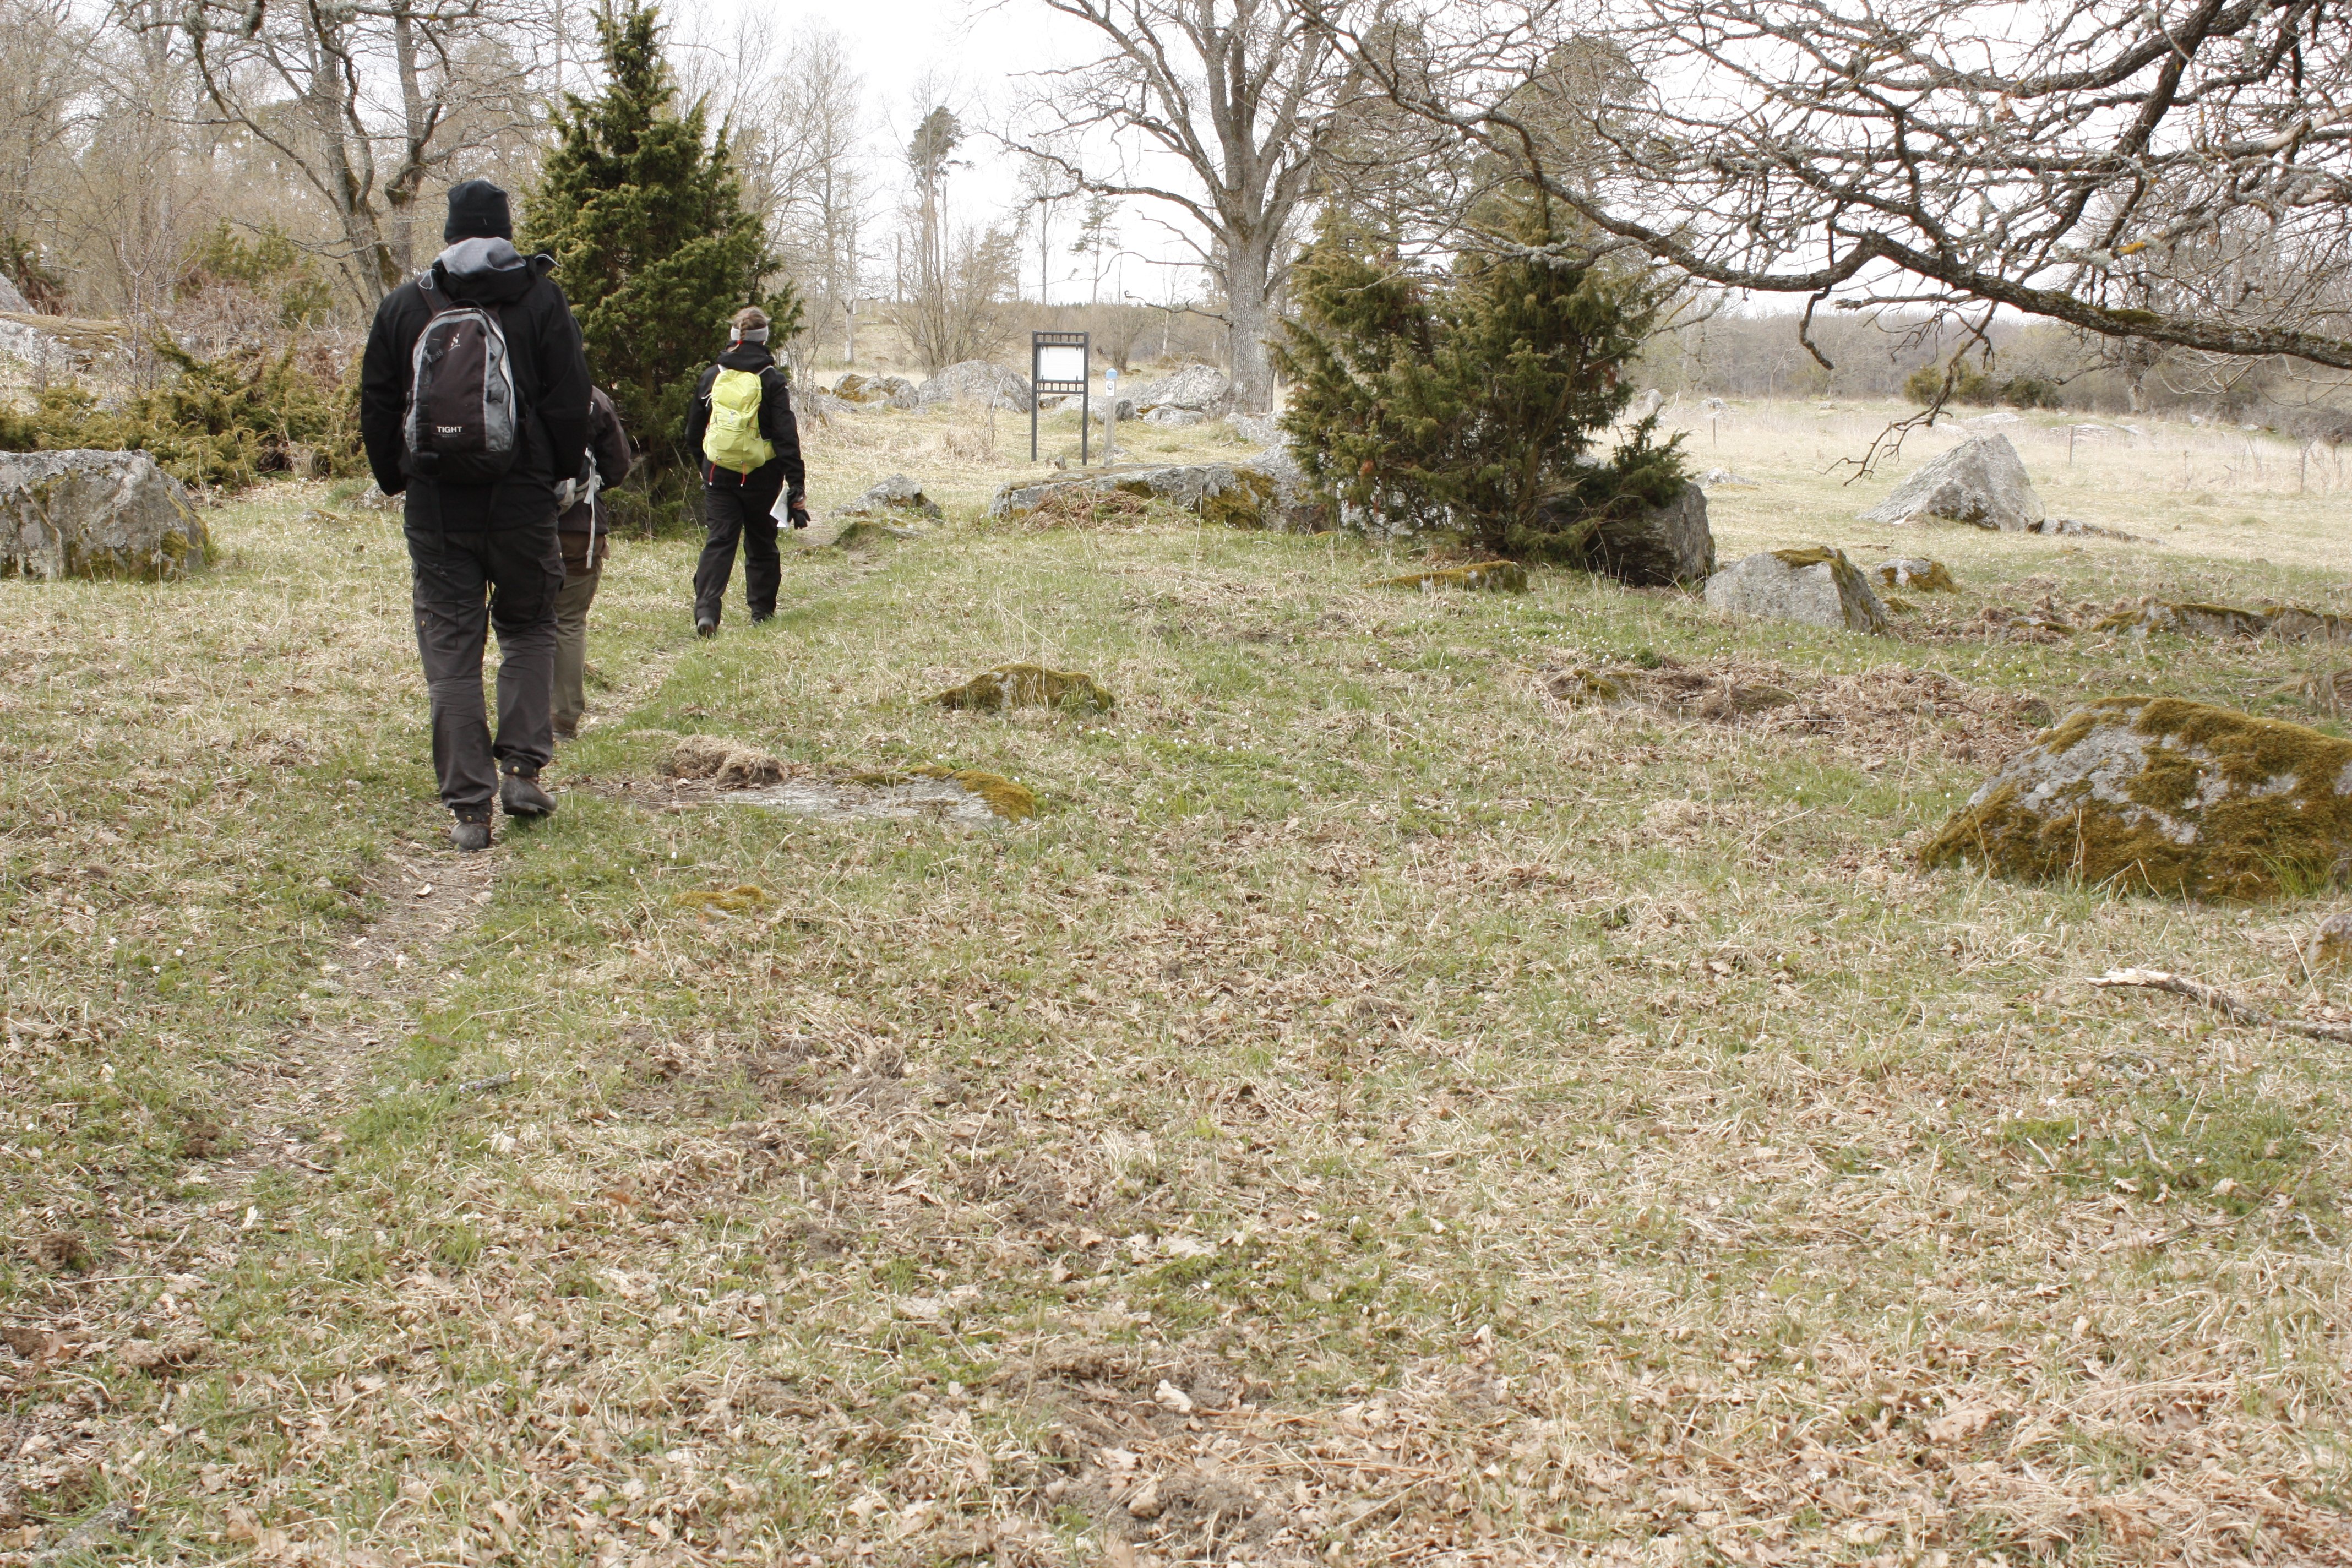 Tre personer vandrar på en smal stig genom öppen gräsmark. I bakgrunden finns buskar, träd och en informationstavla.